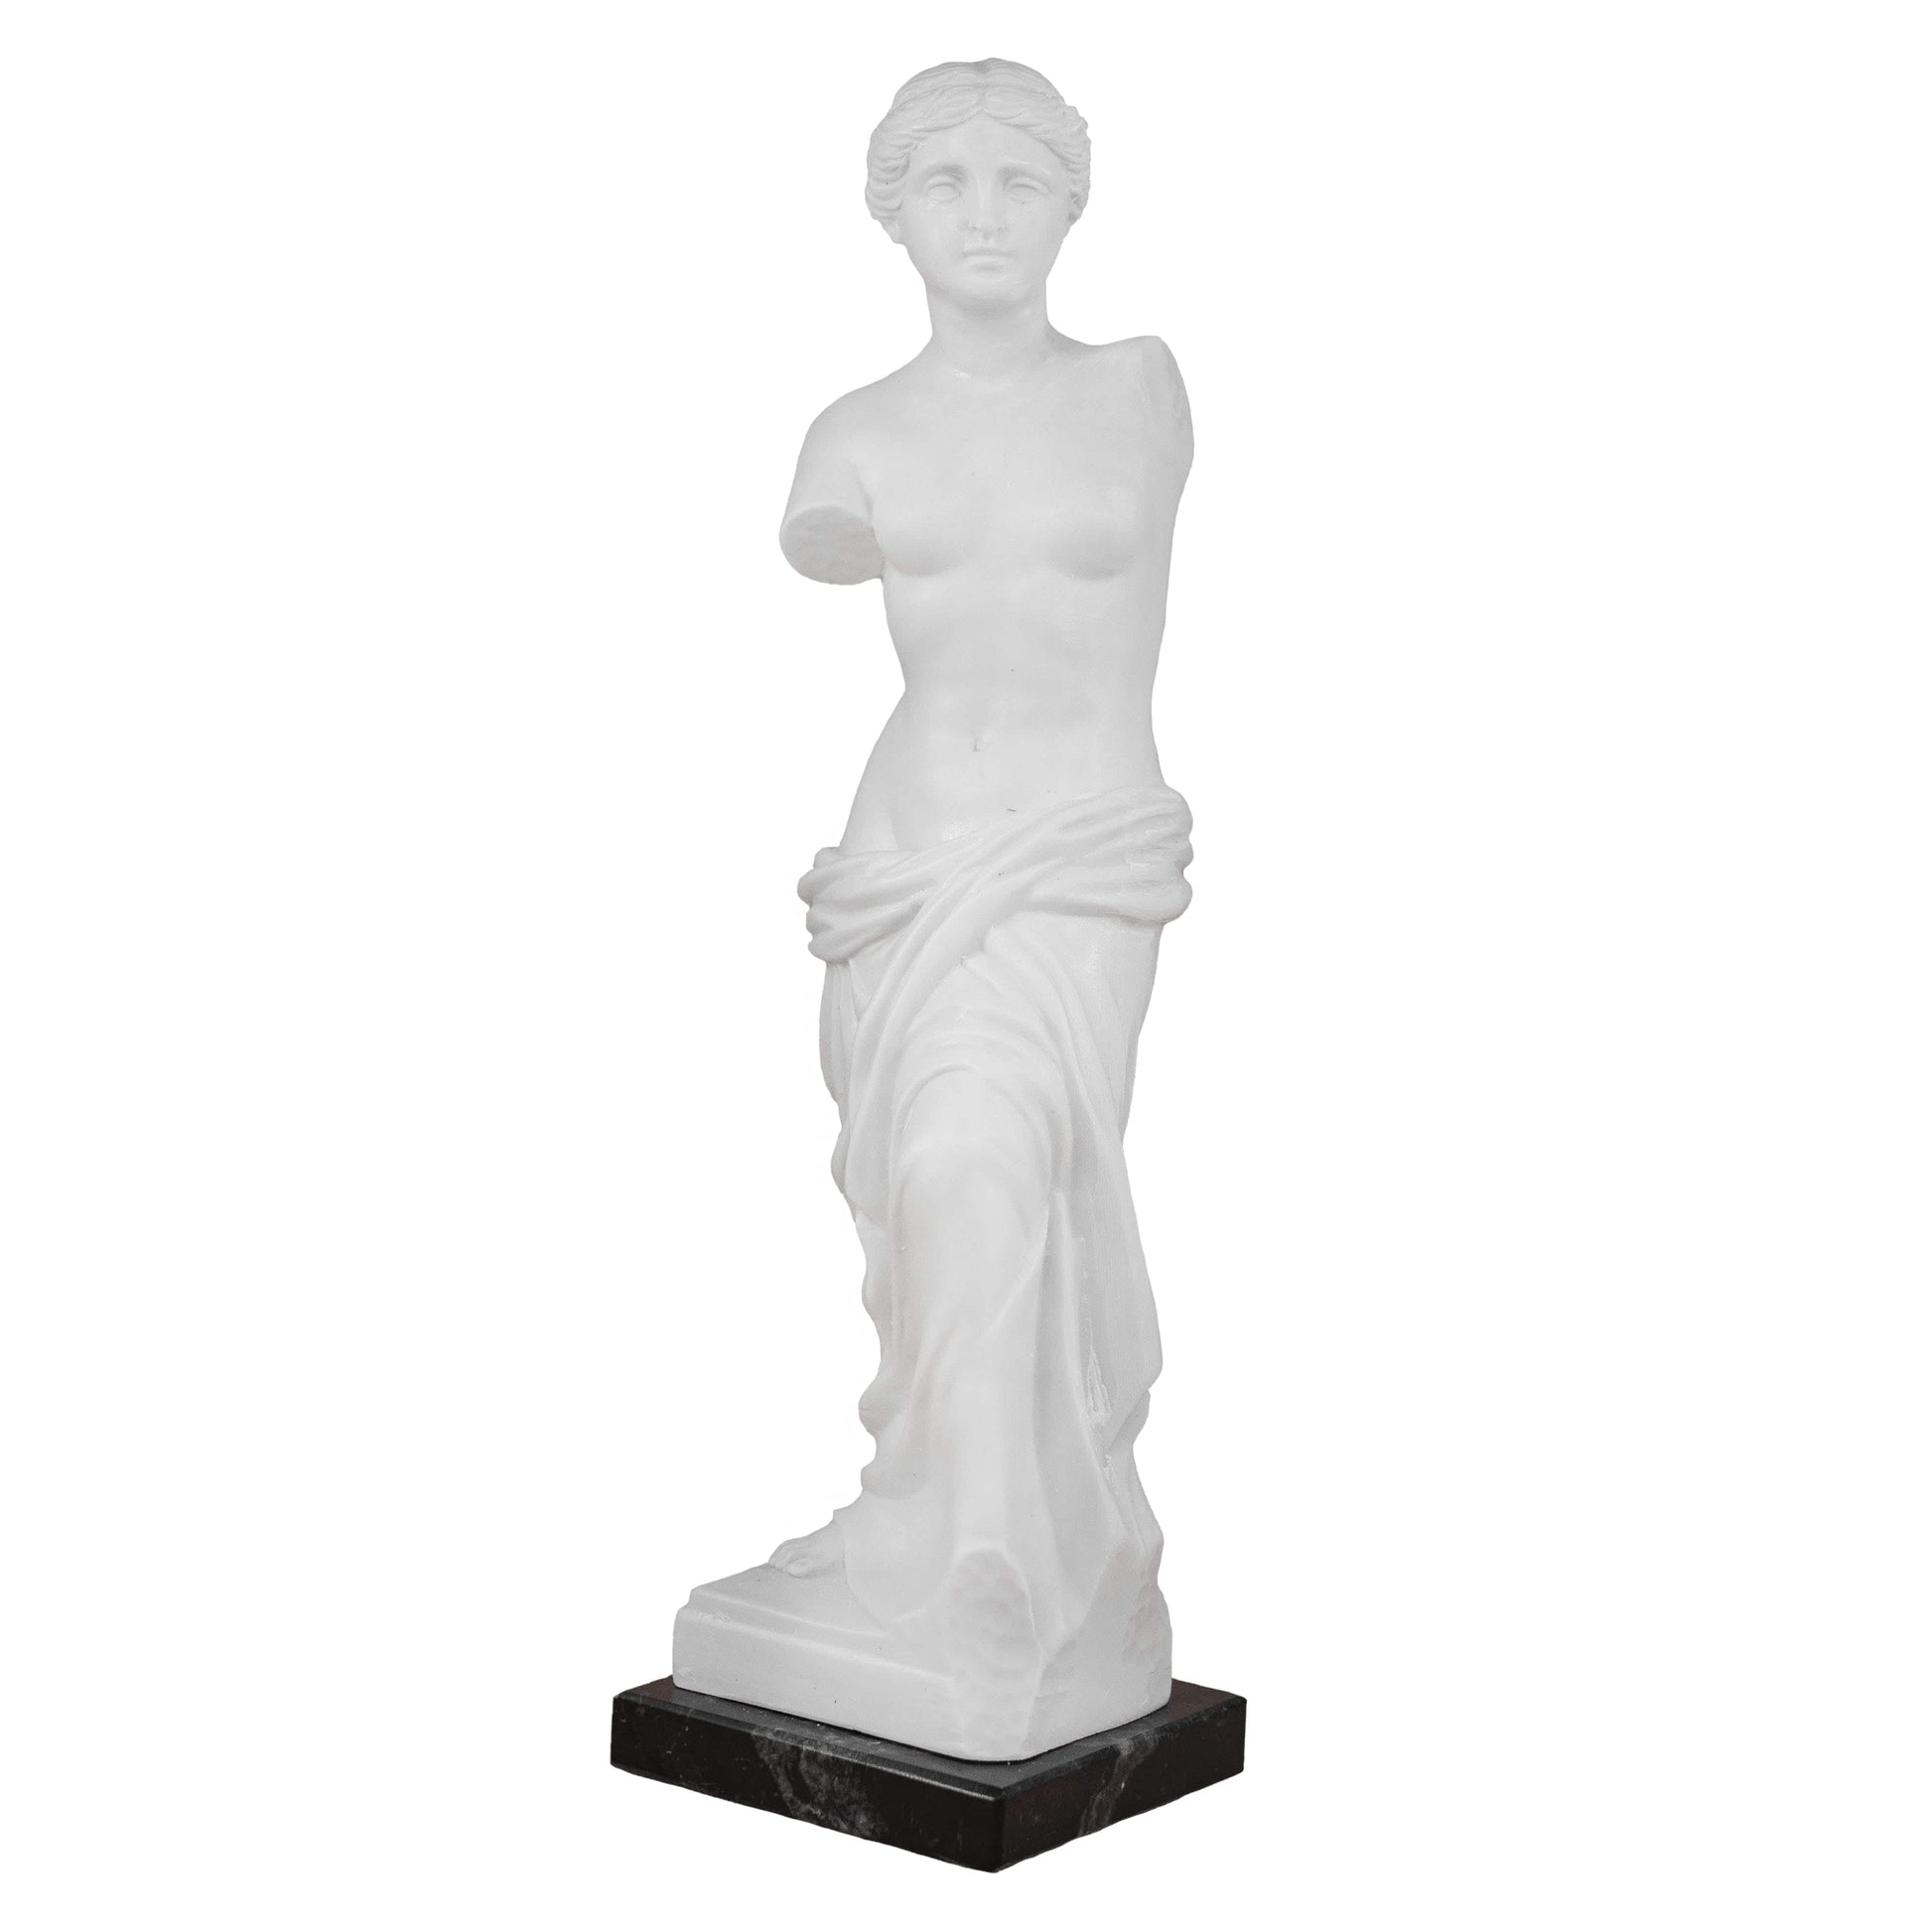 MONDO CATTOLICO 20 cm Venus de Milo Marble Dust Statue